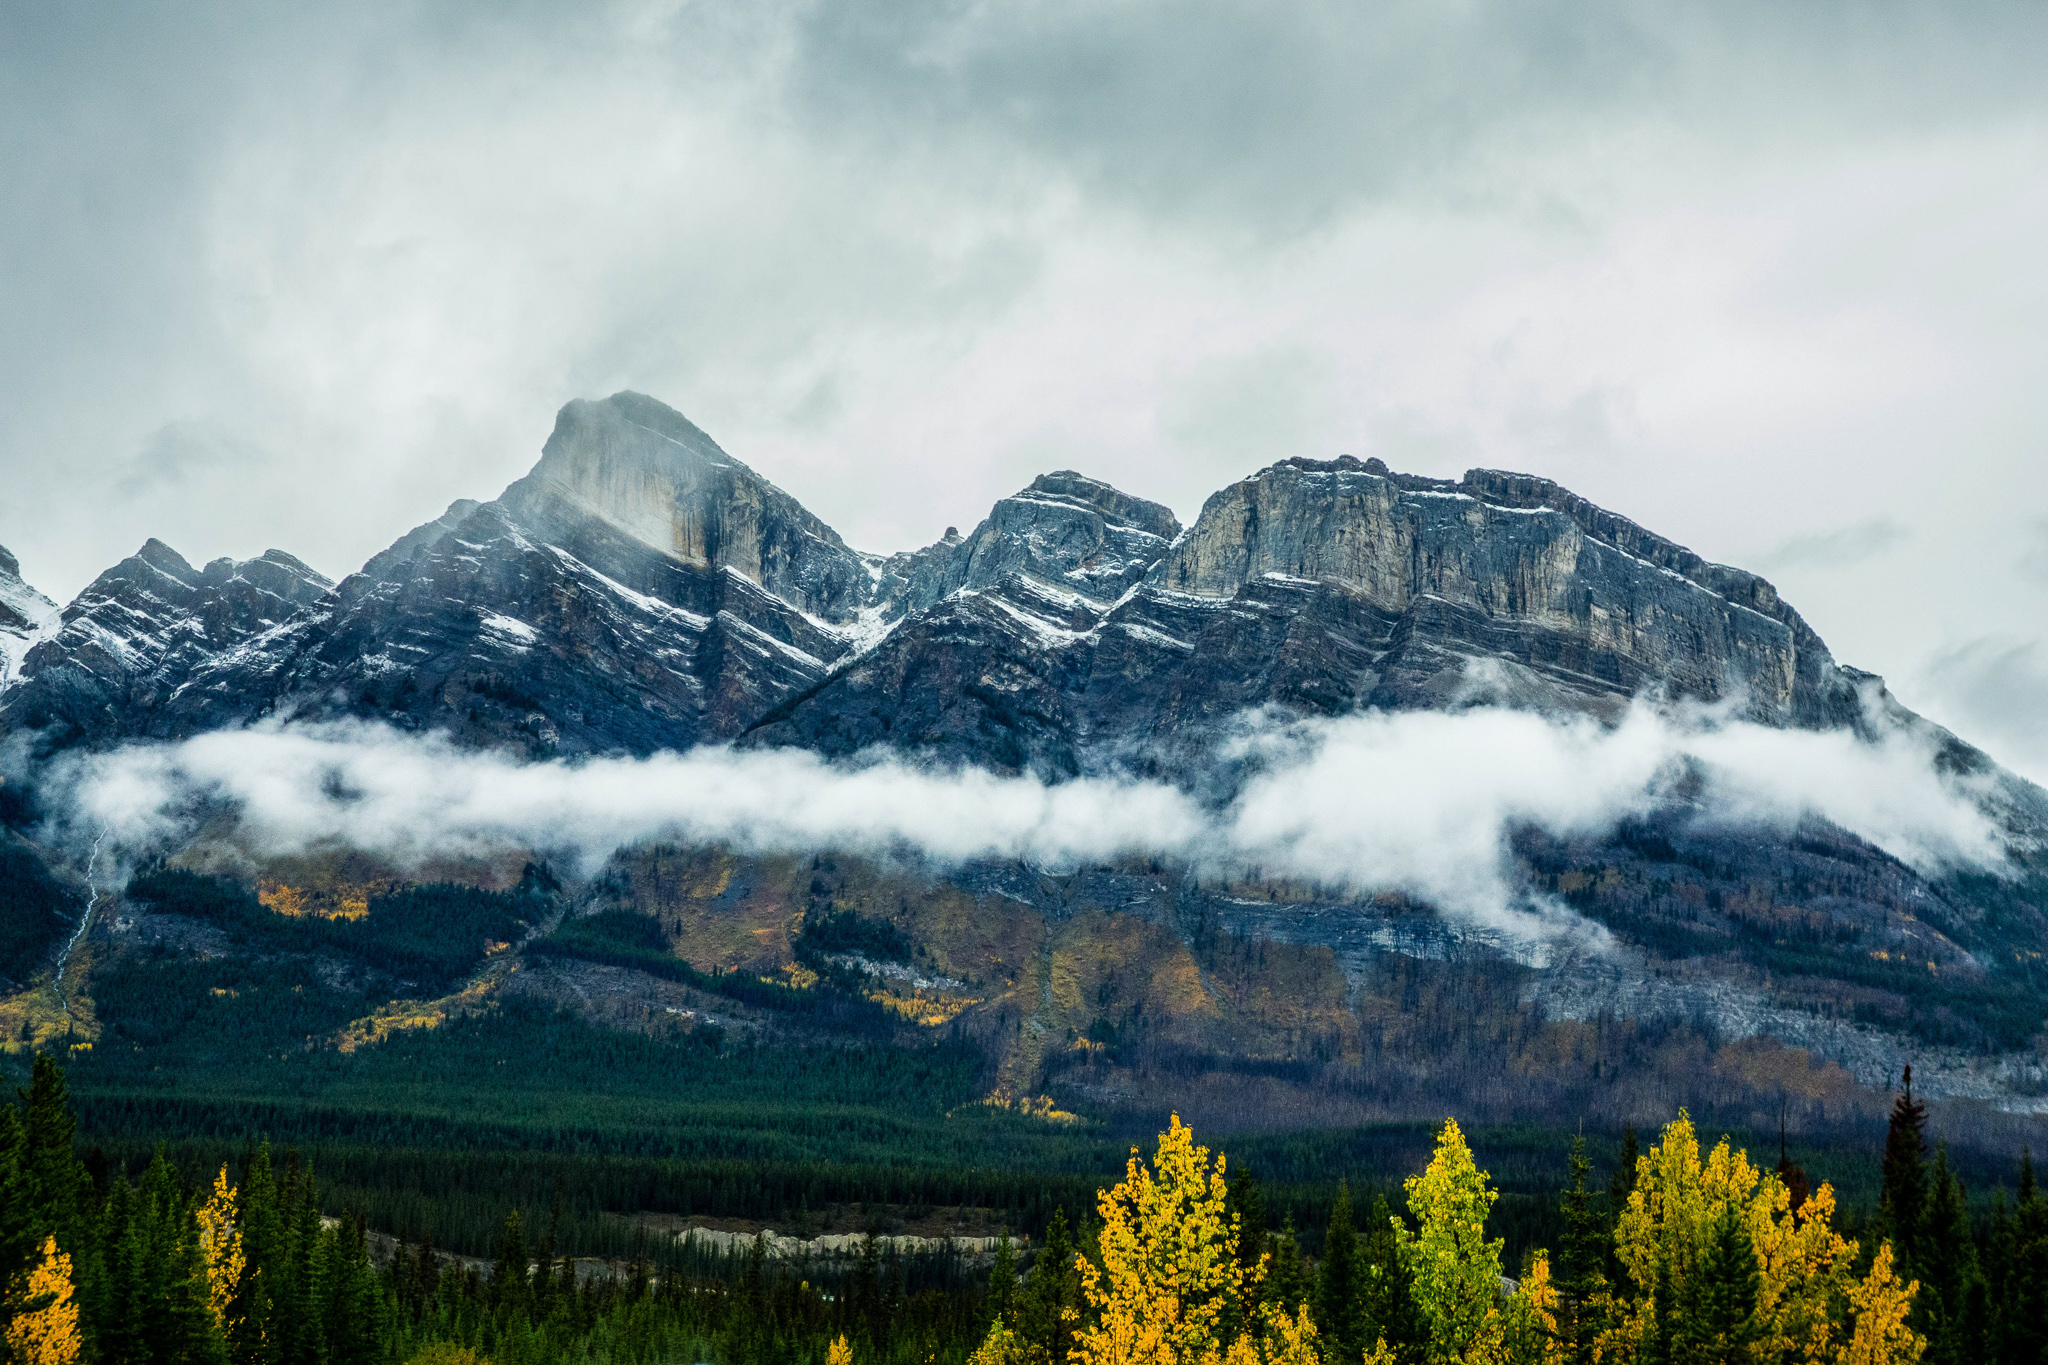 Canadian Rockies – Banff/Lake Louise